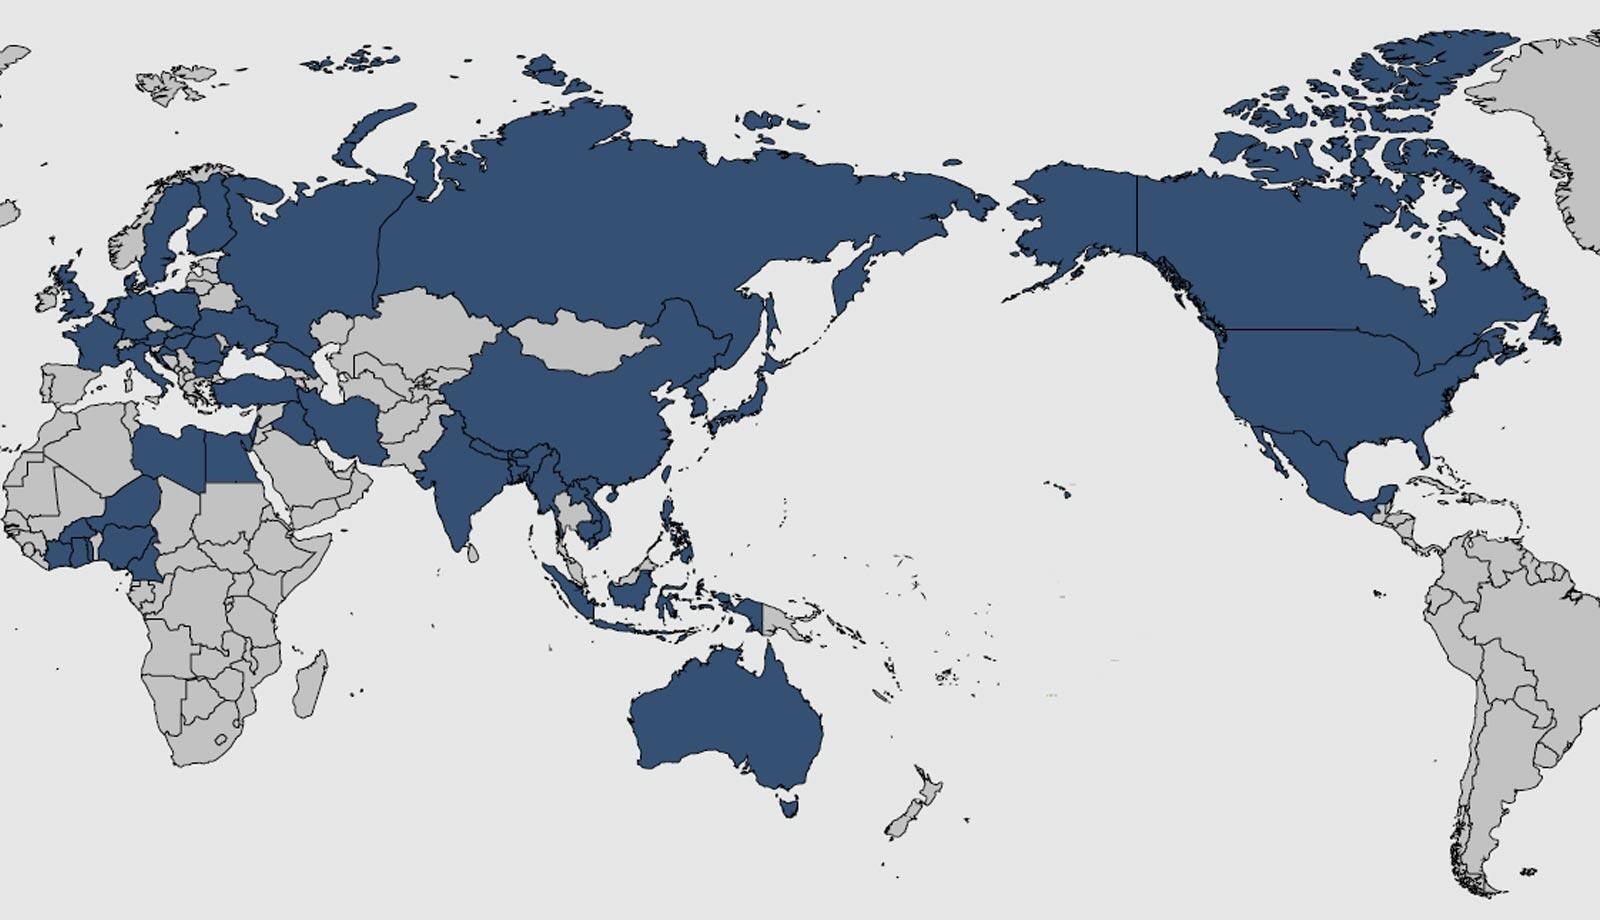 2014年以降に高病原性鳥インフルエンザが確認された国々